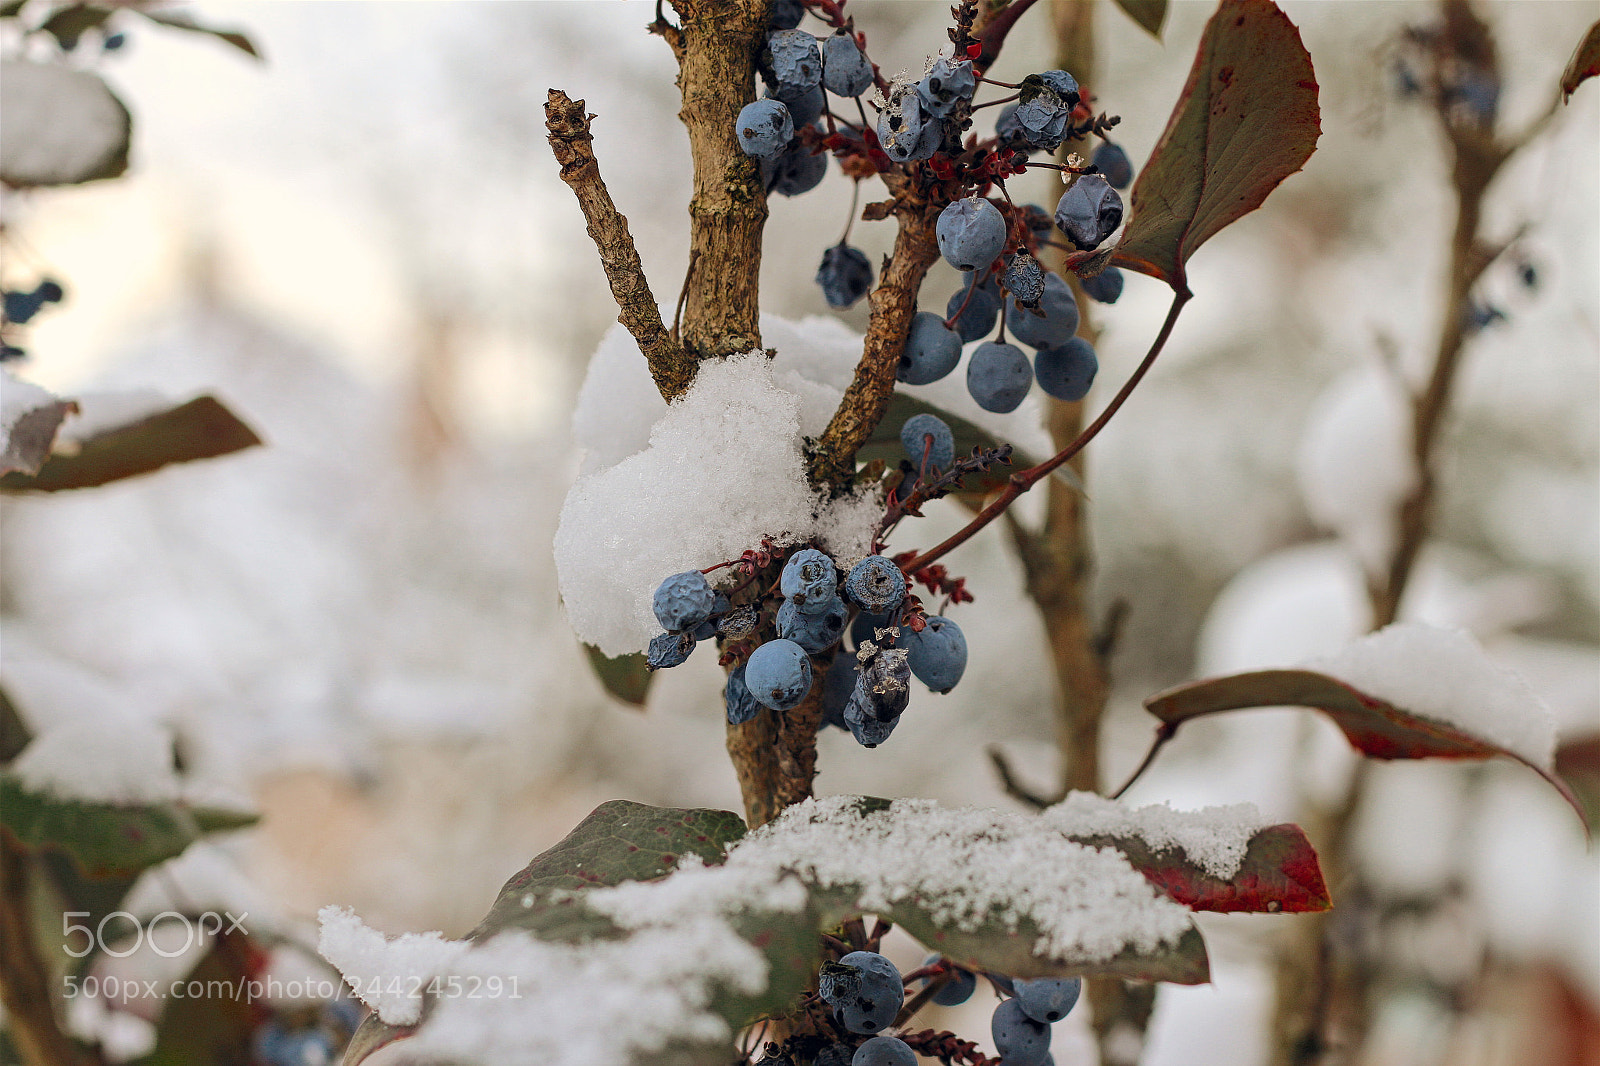 Canon EOS 70D sample photo. Winter garden photography